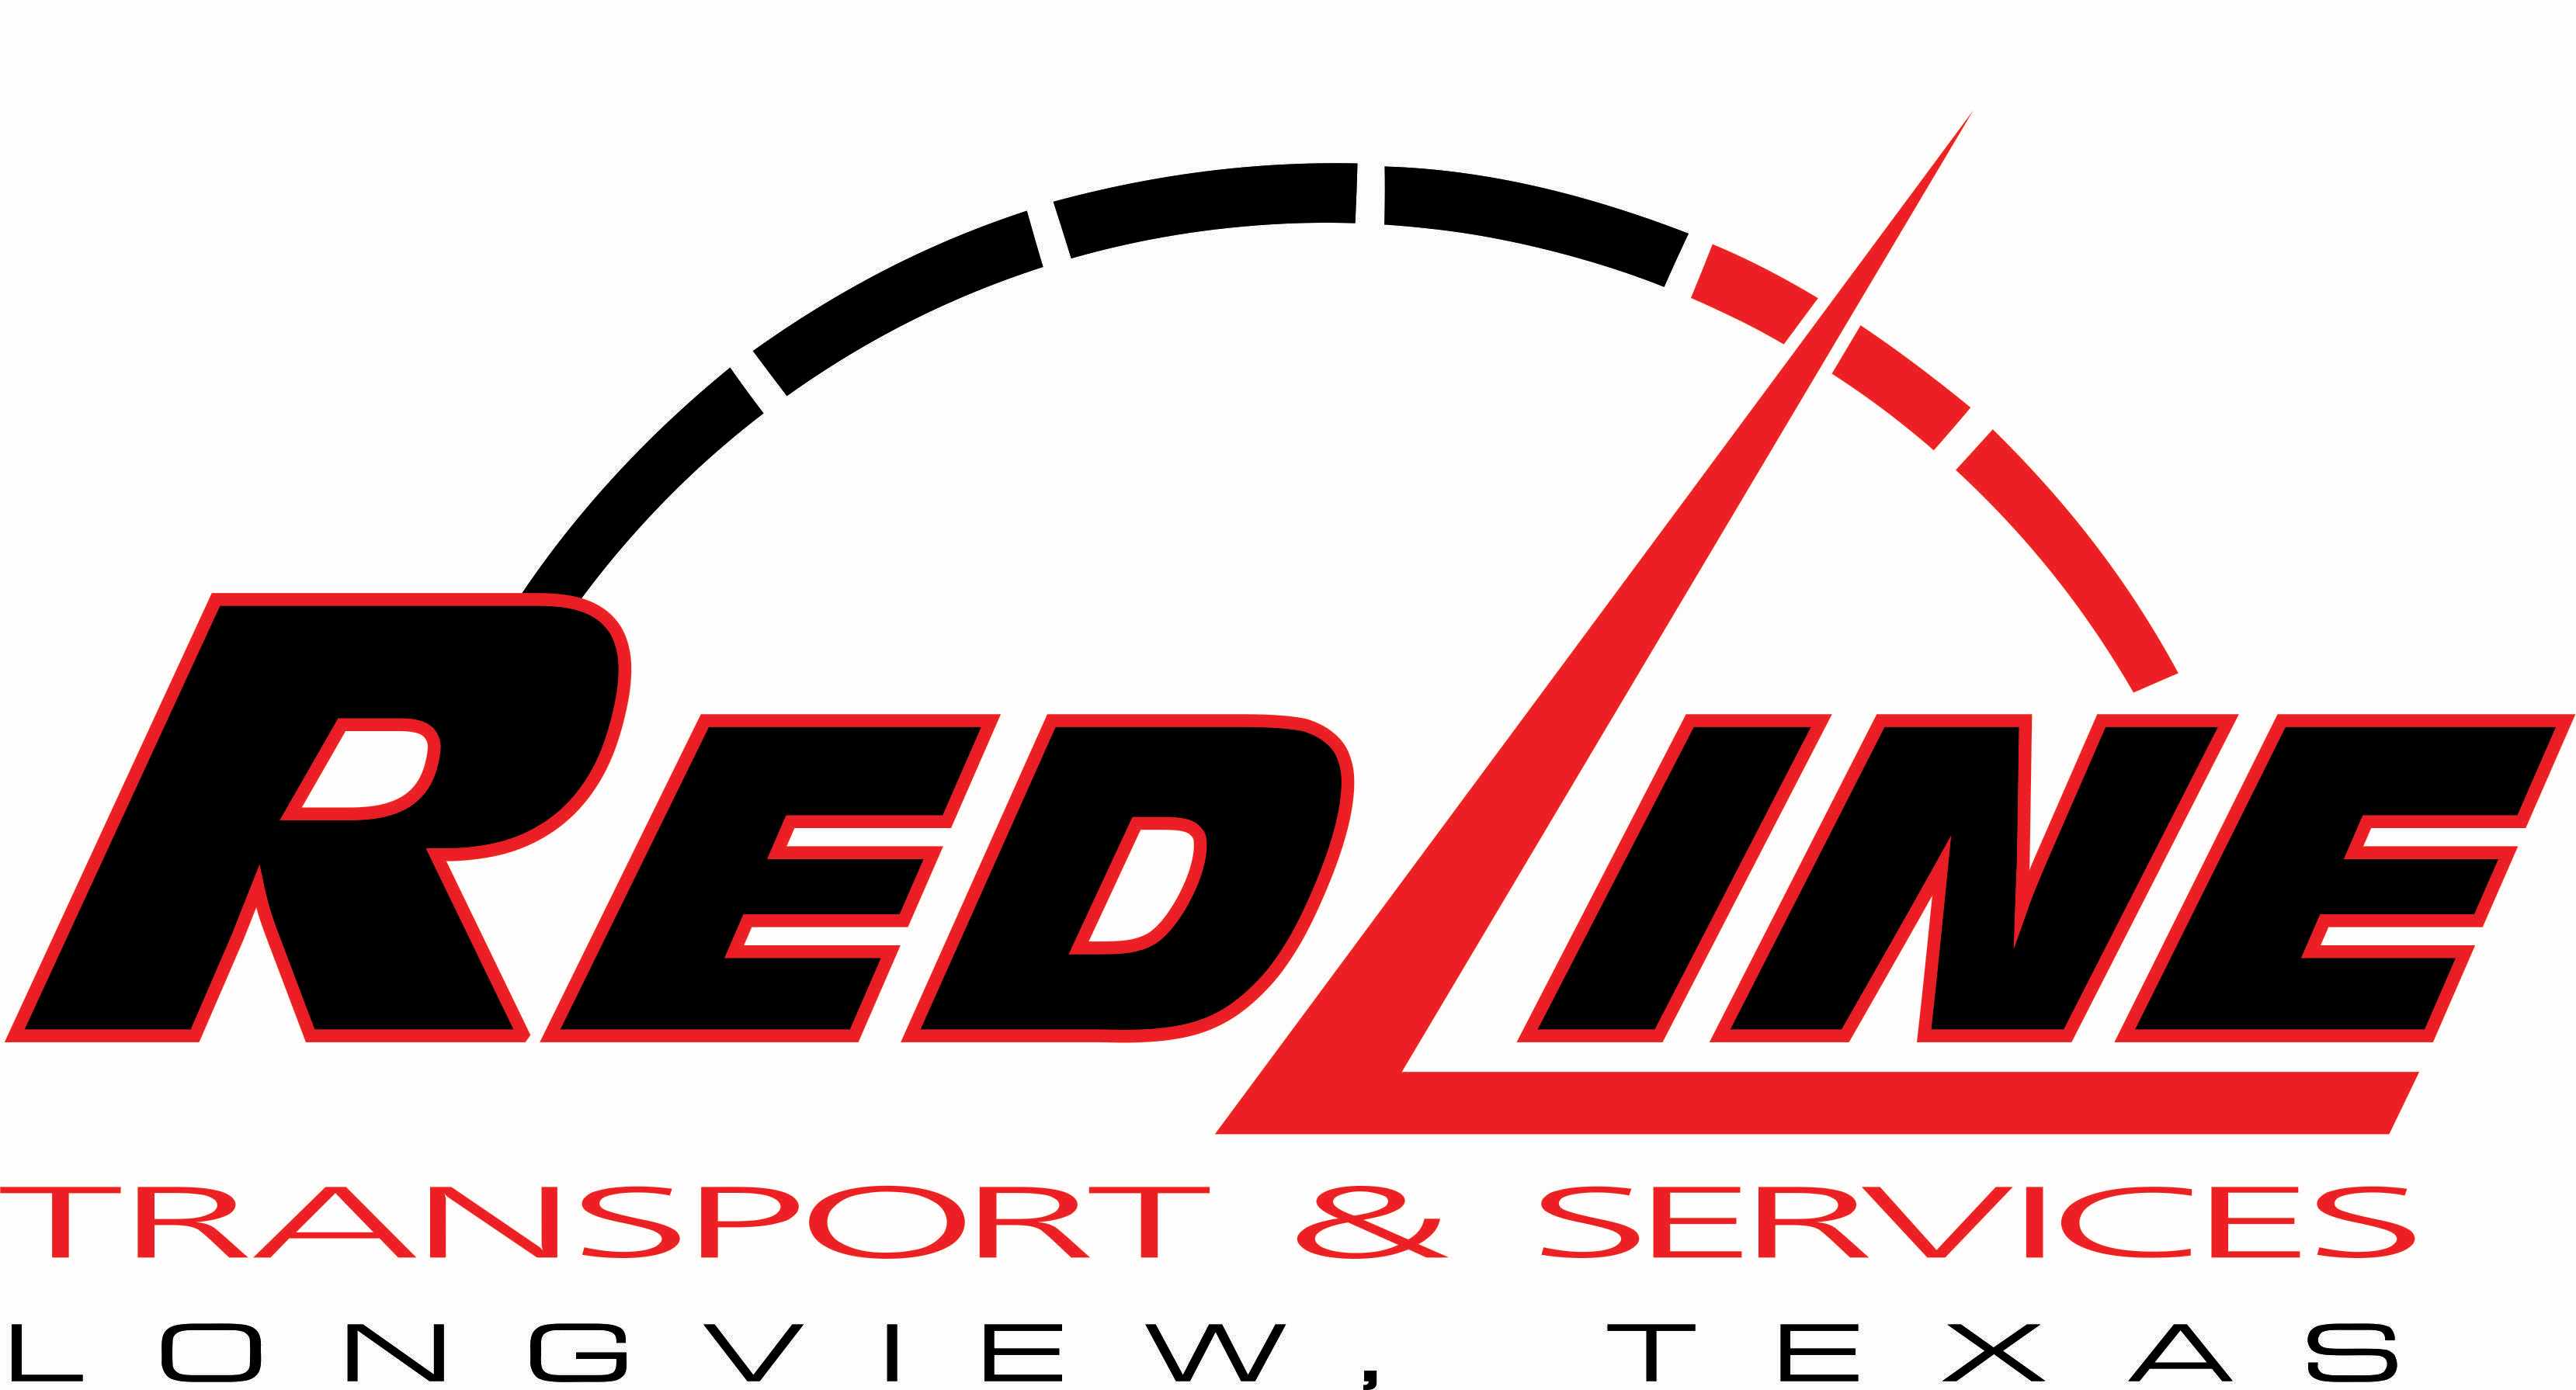 Redline Transport & Services